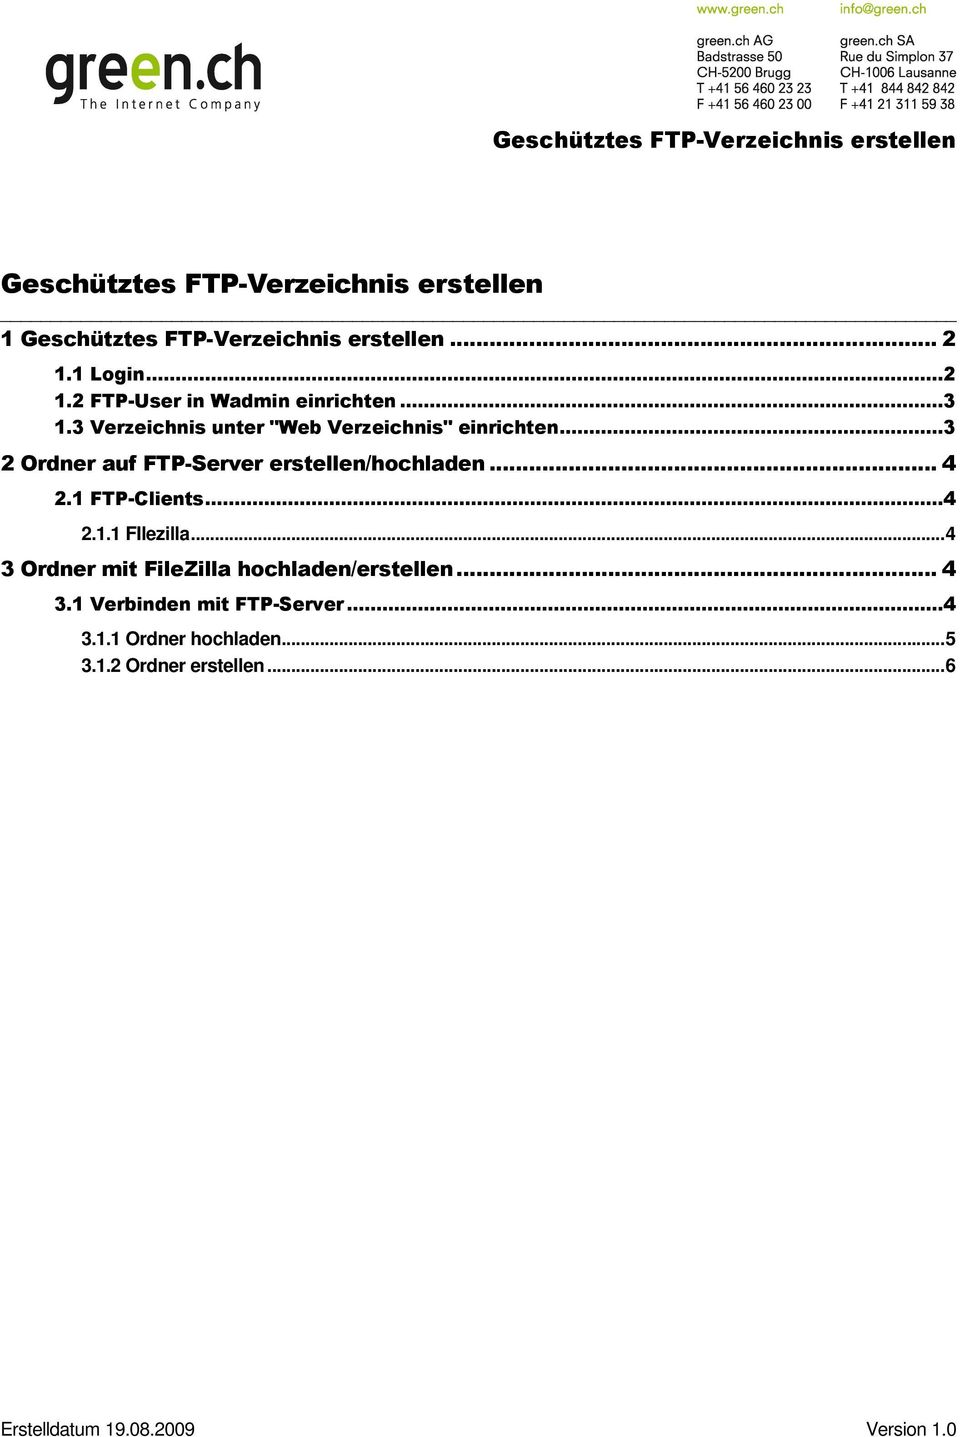 ..3 2 Ordner auf FTP-Server erstellen/hochladen... 4 2.1 FTP-Clients...4 2.1.1 FIlezilla.